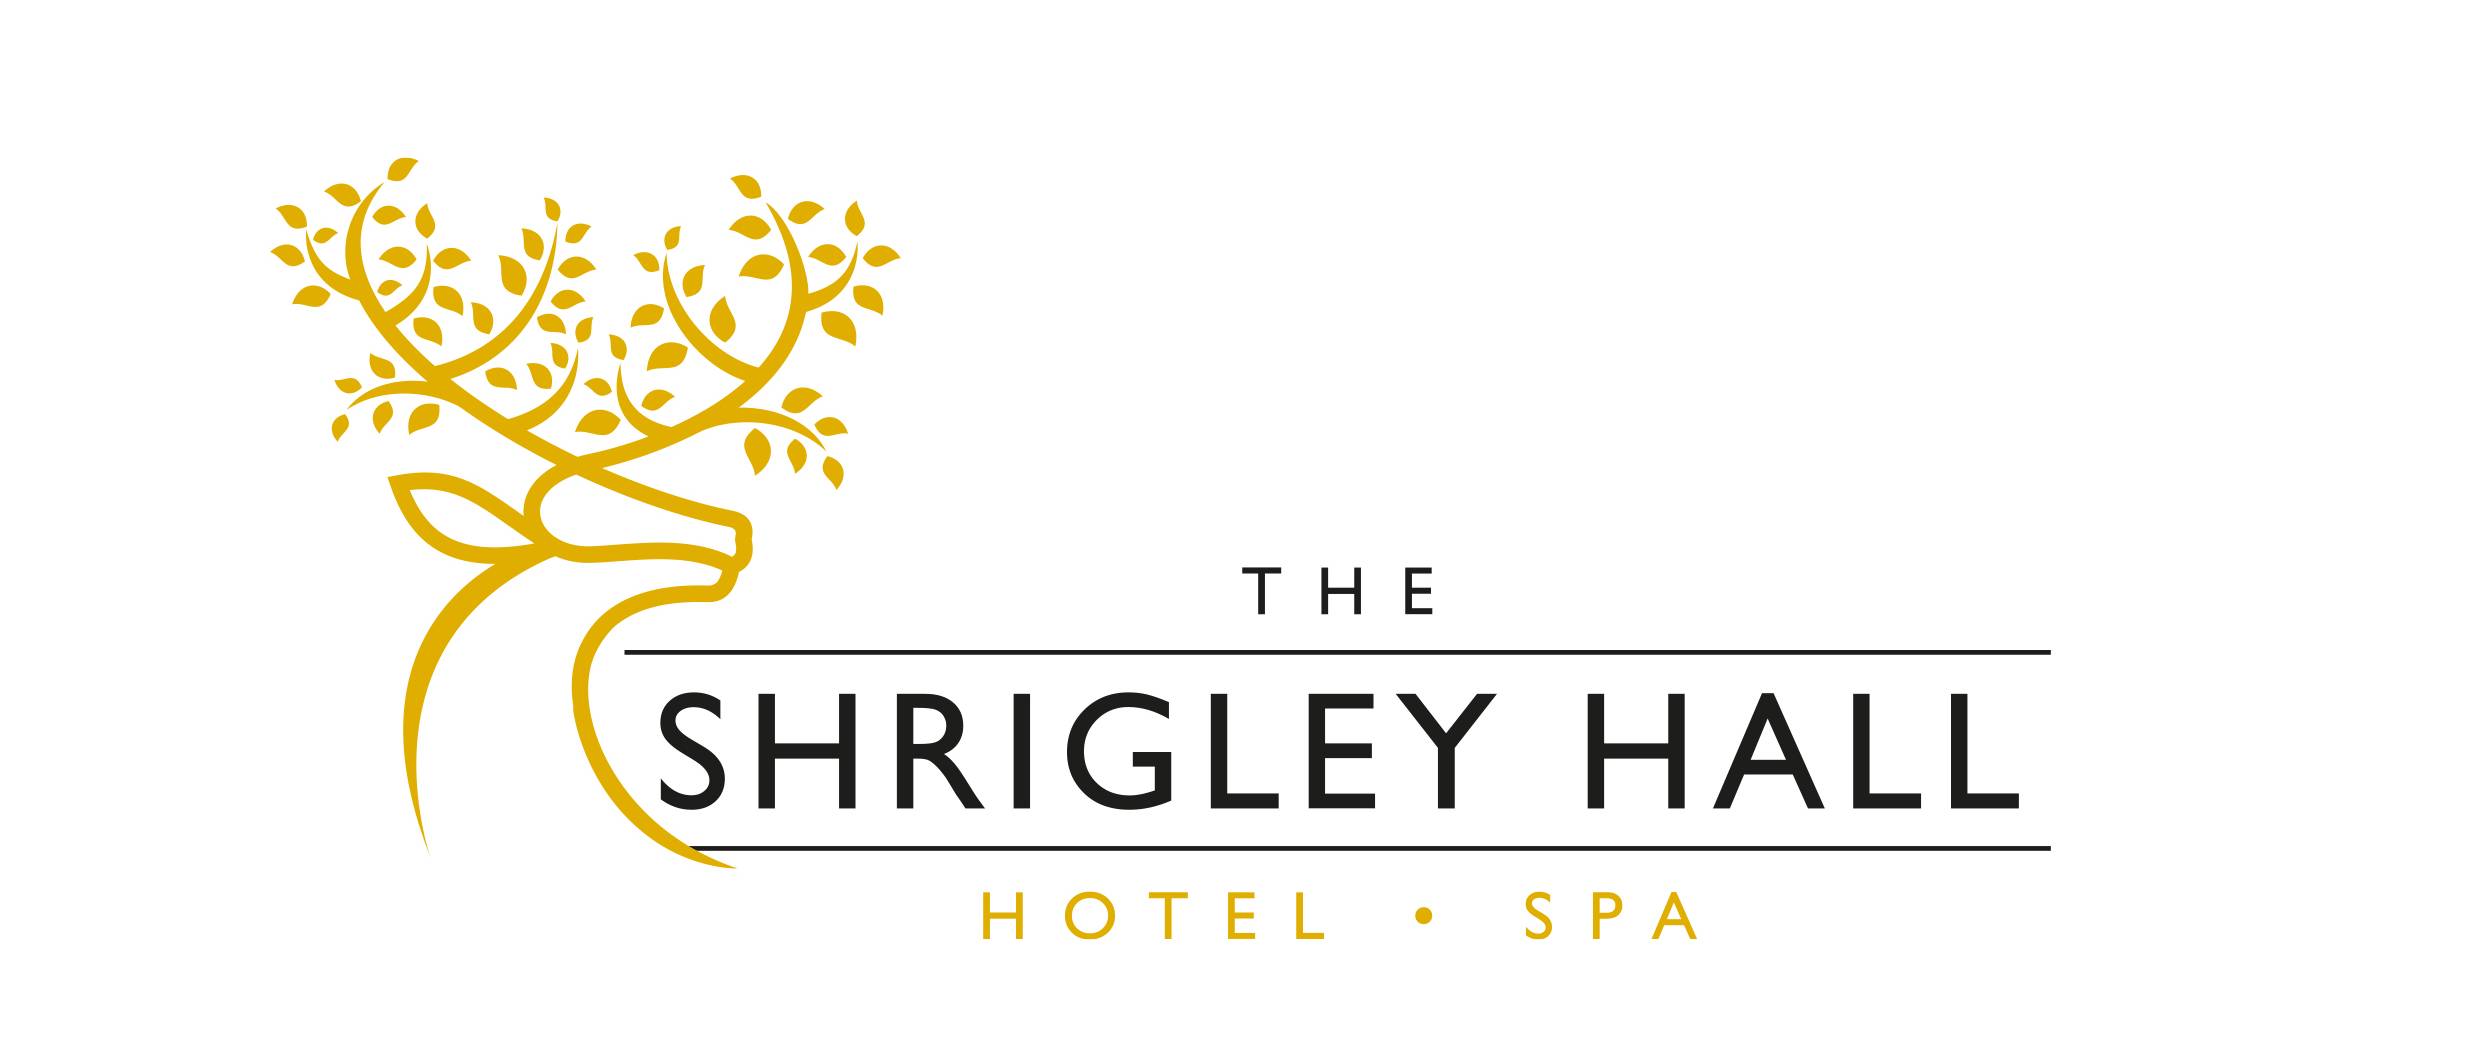 Shrigley Hall Hotel & Spa